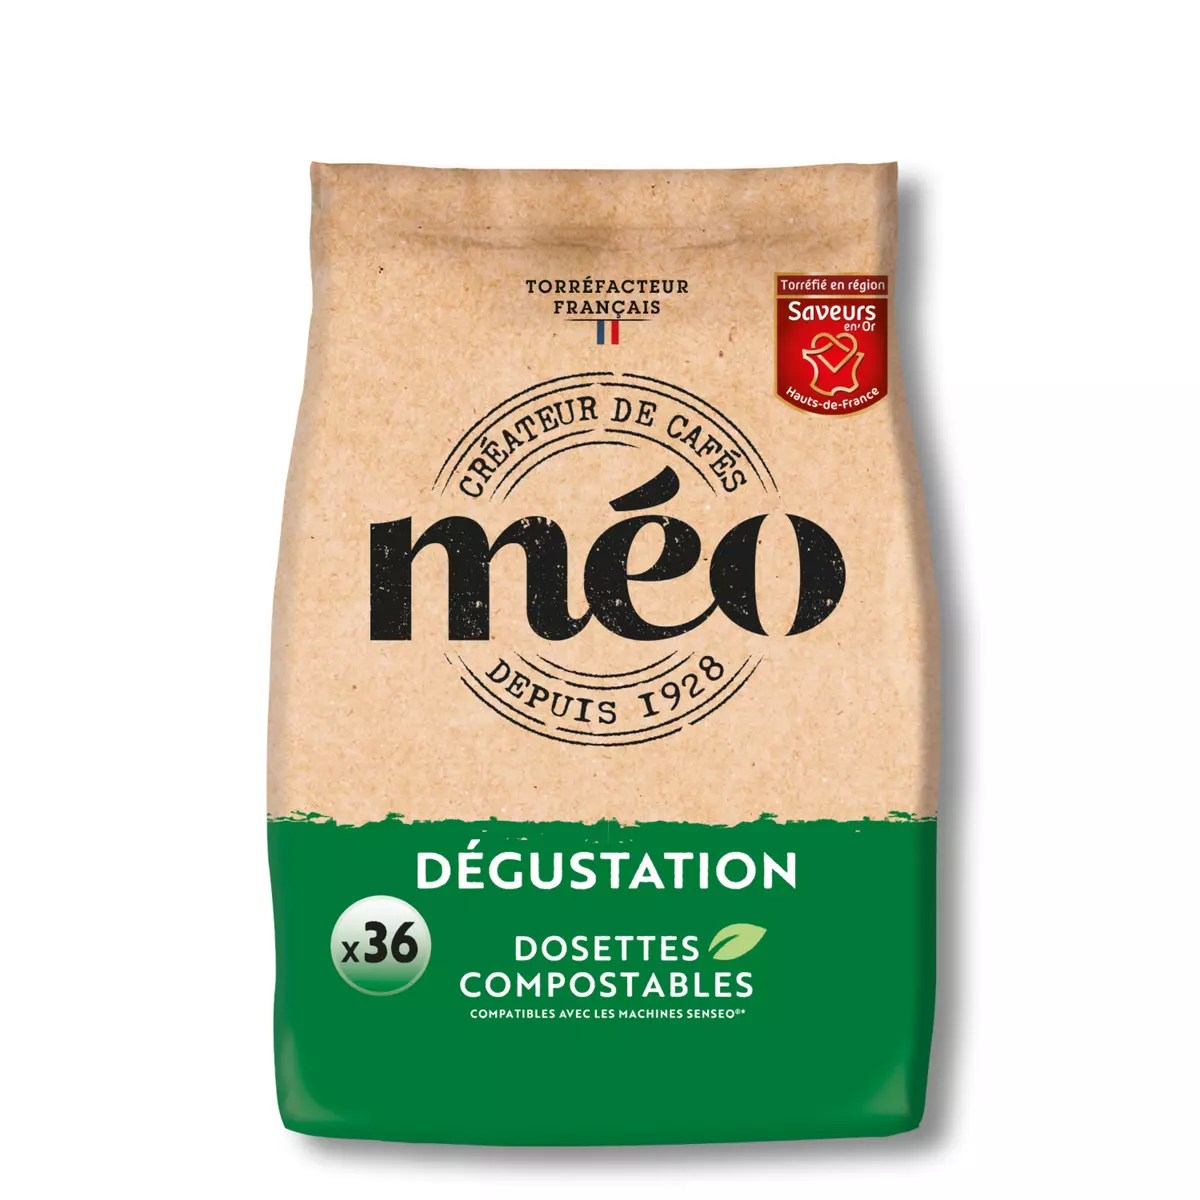 MEO Dosettes de café dégustation pur arabica compatibles Senseo 36 dosettes 252g